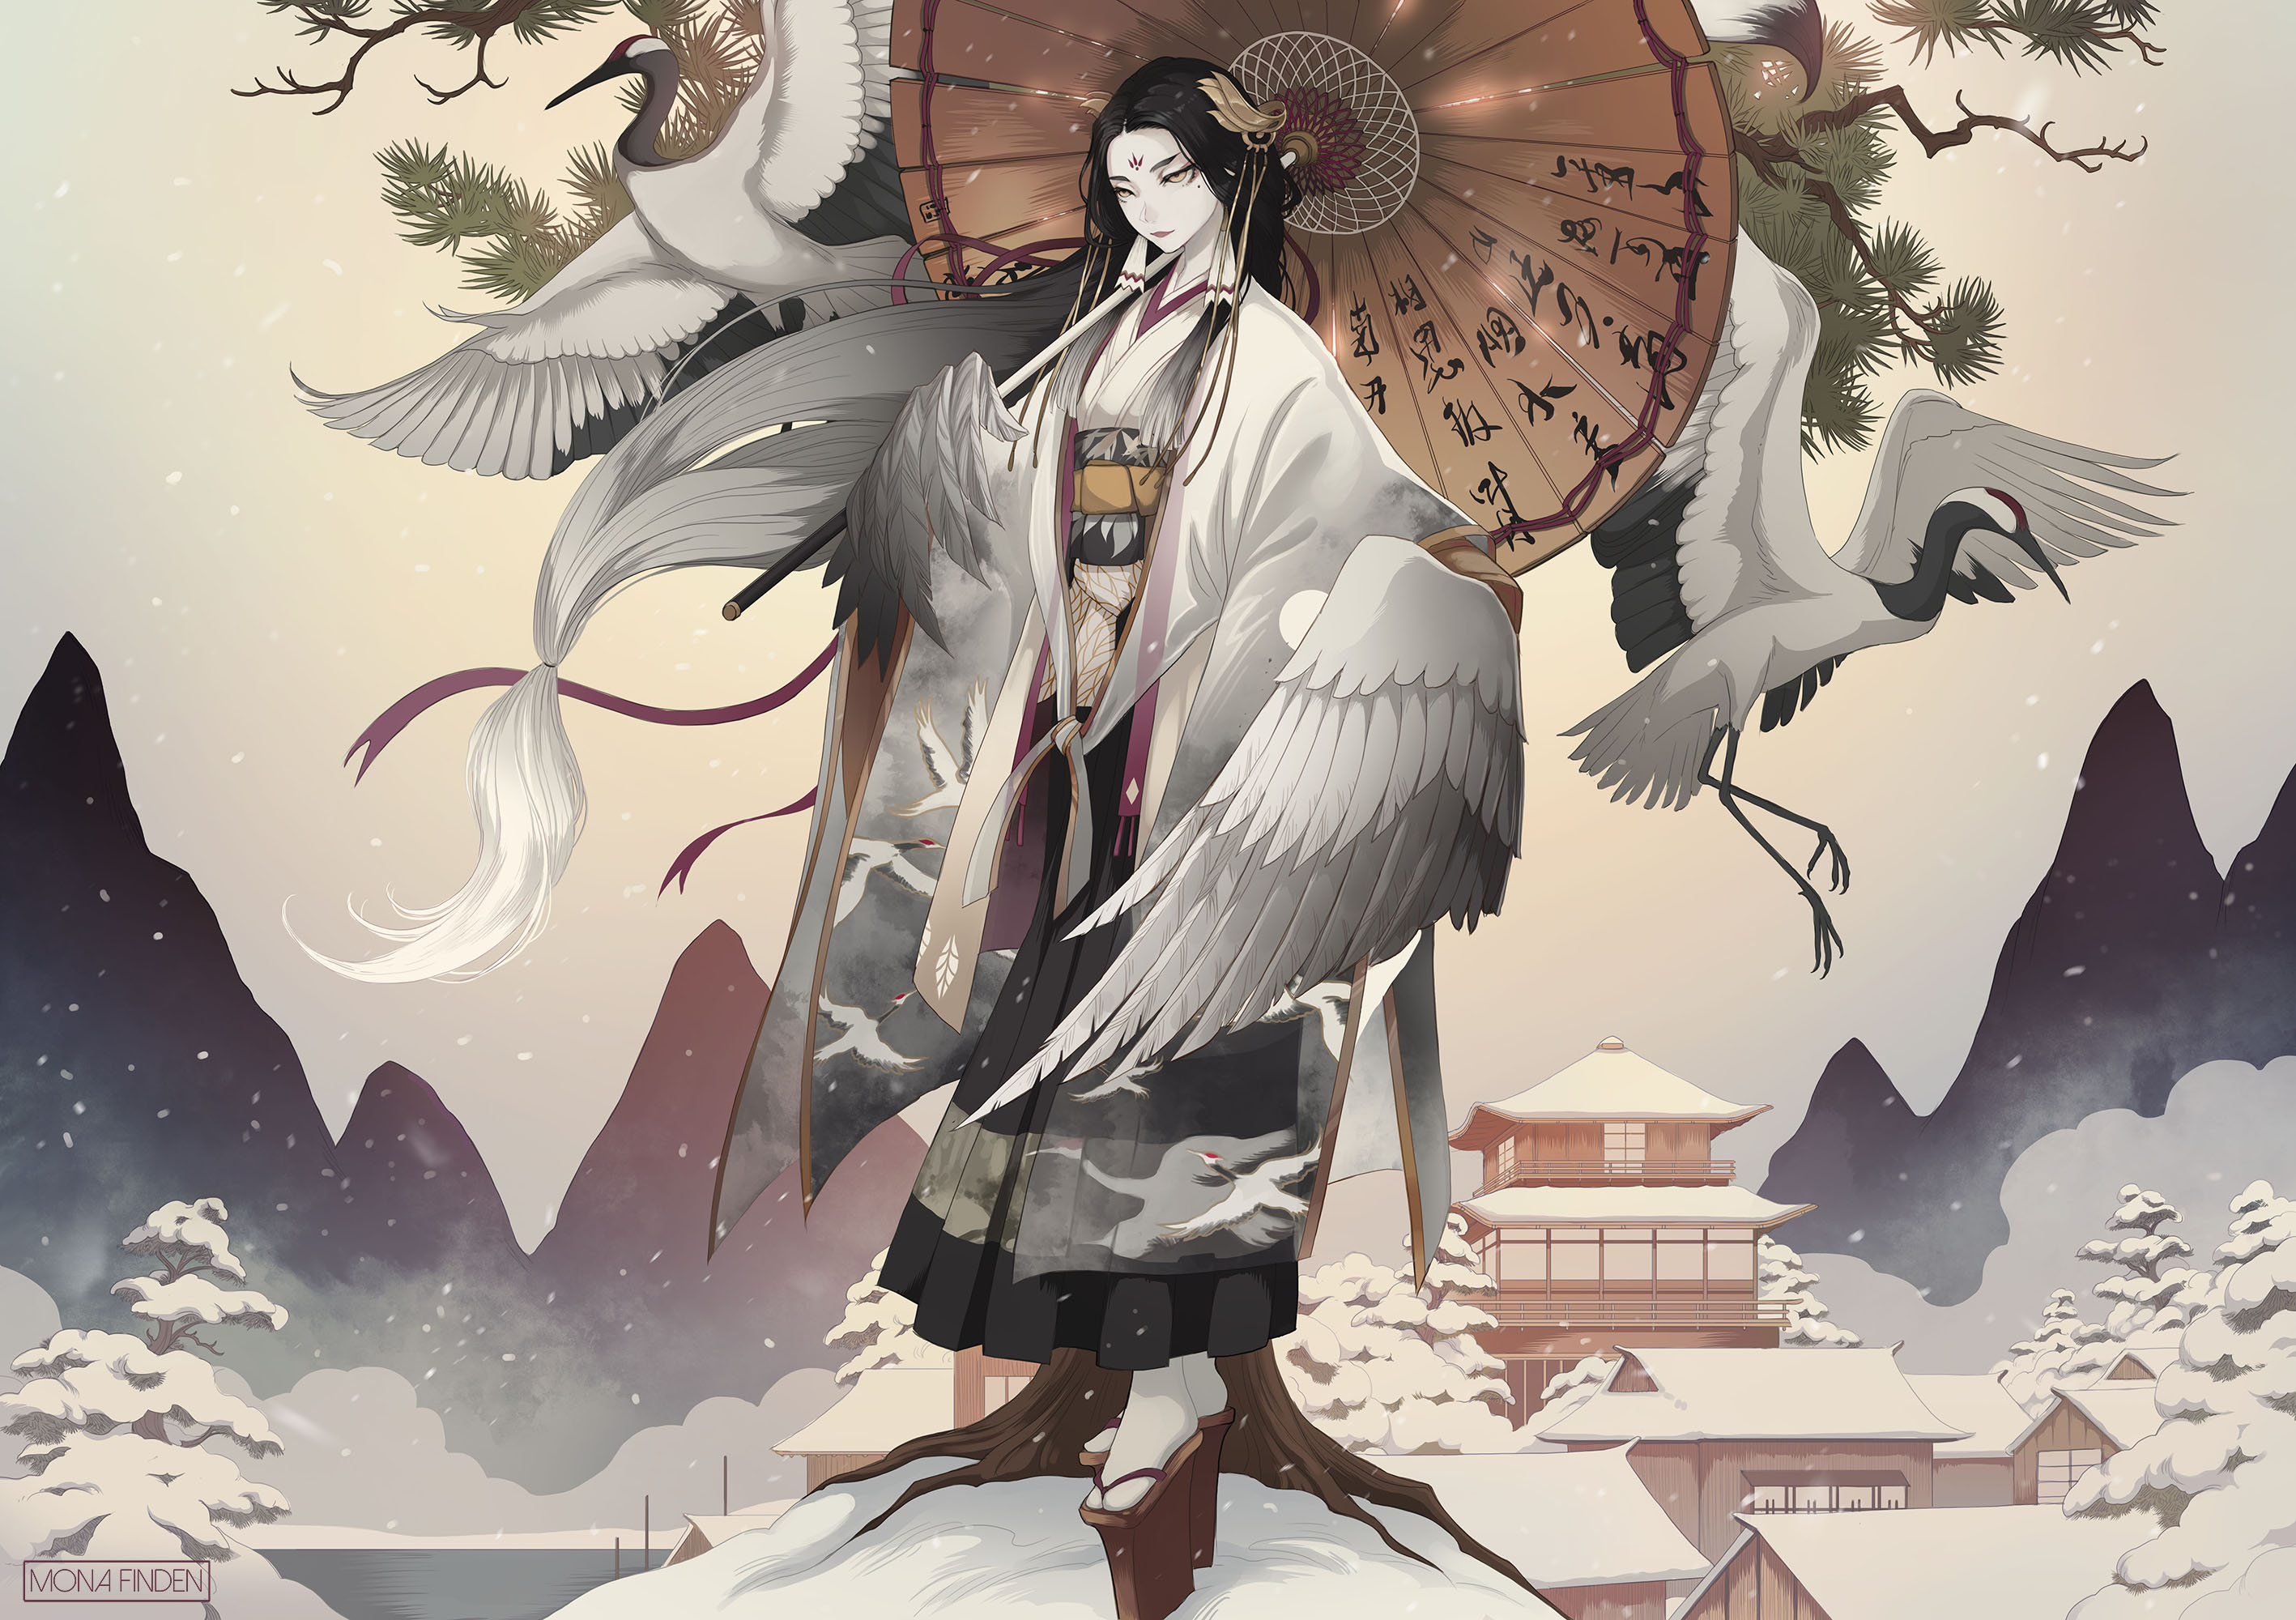 Anime Anime Girls Japanese Kimono Kimono Wings Asian Architecture Snow Winter Mountains Cranes Black 2835x2000